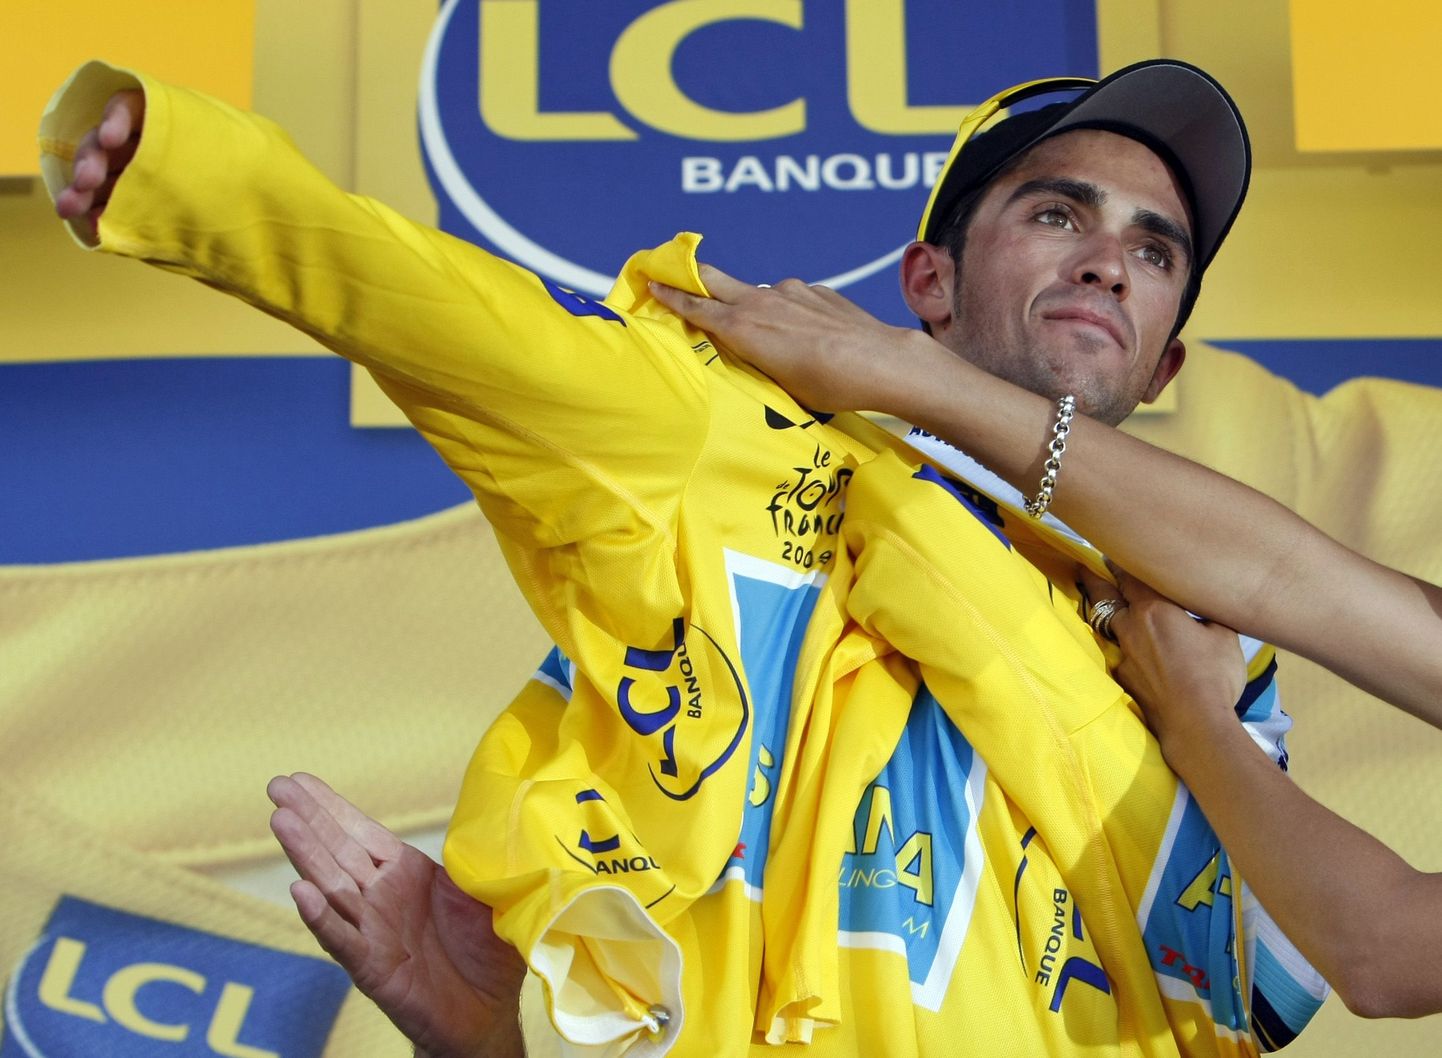 Alberto Contador tõmbas selga kollase liidrisärgi.